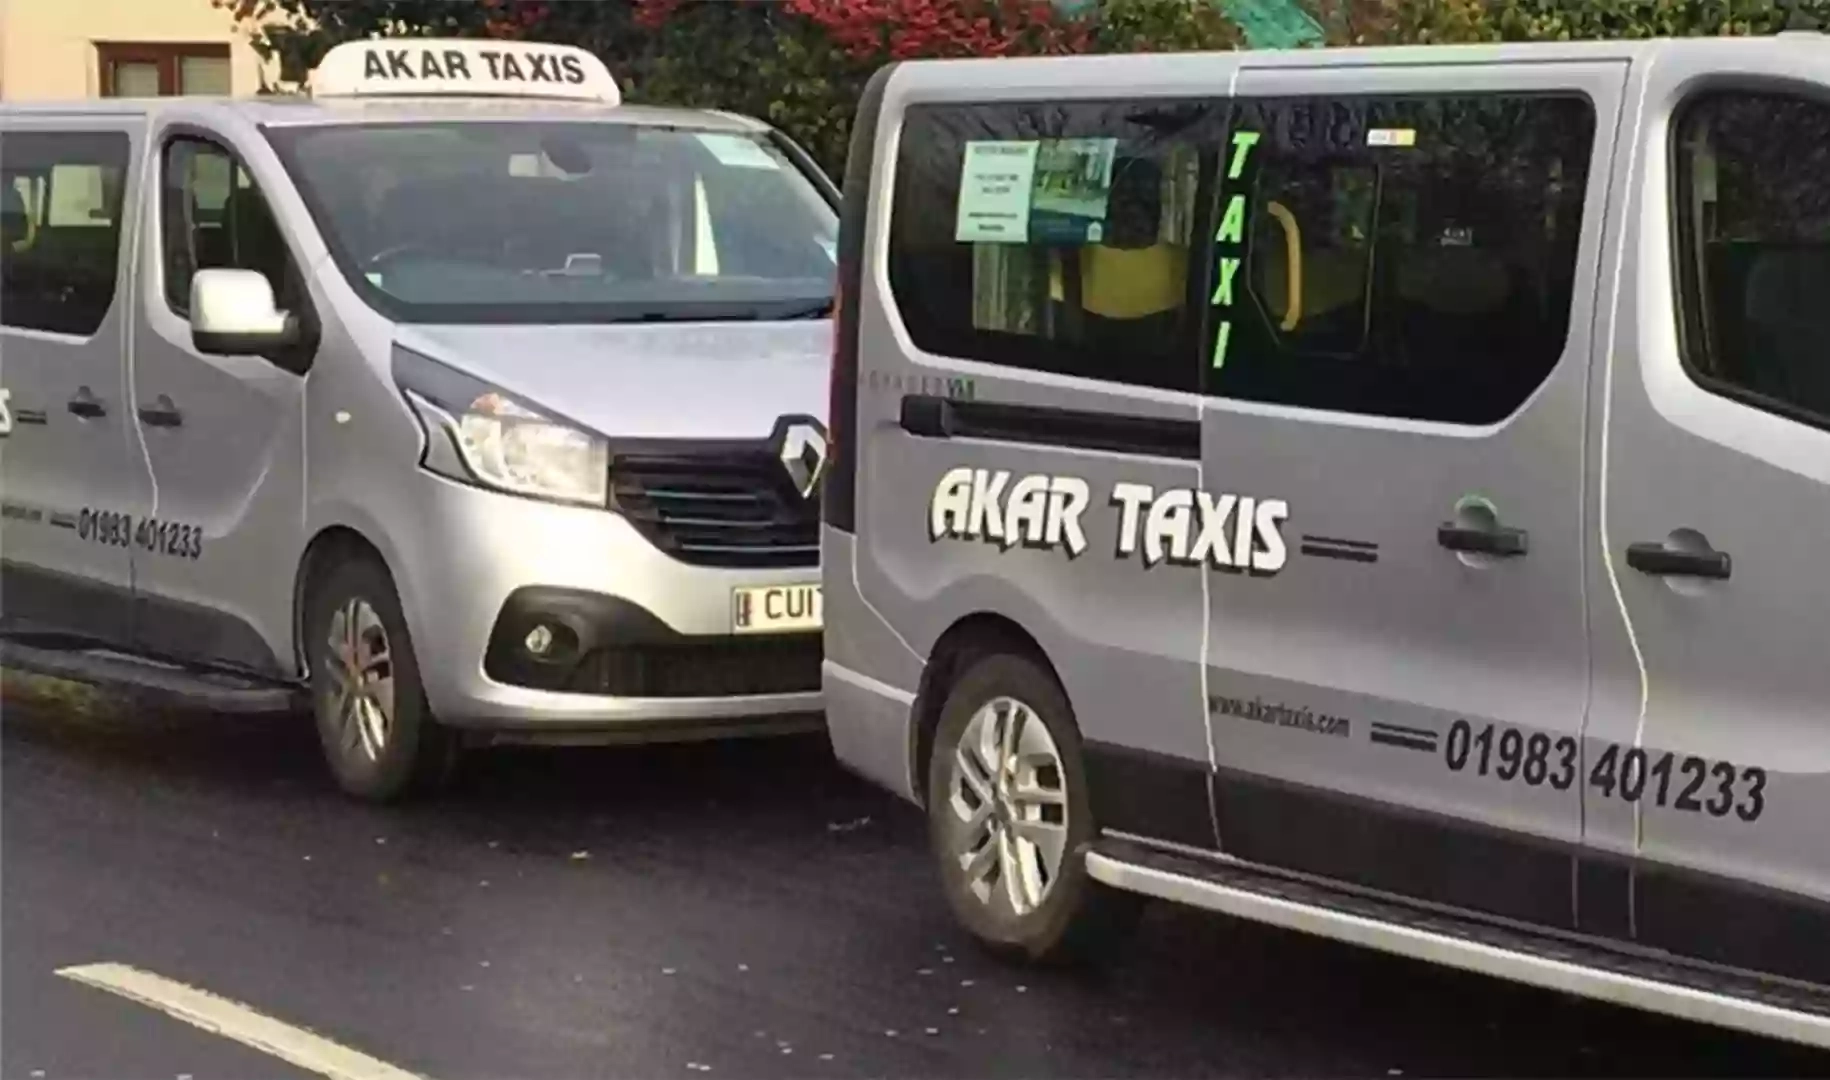 Akar Taxis